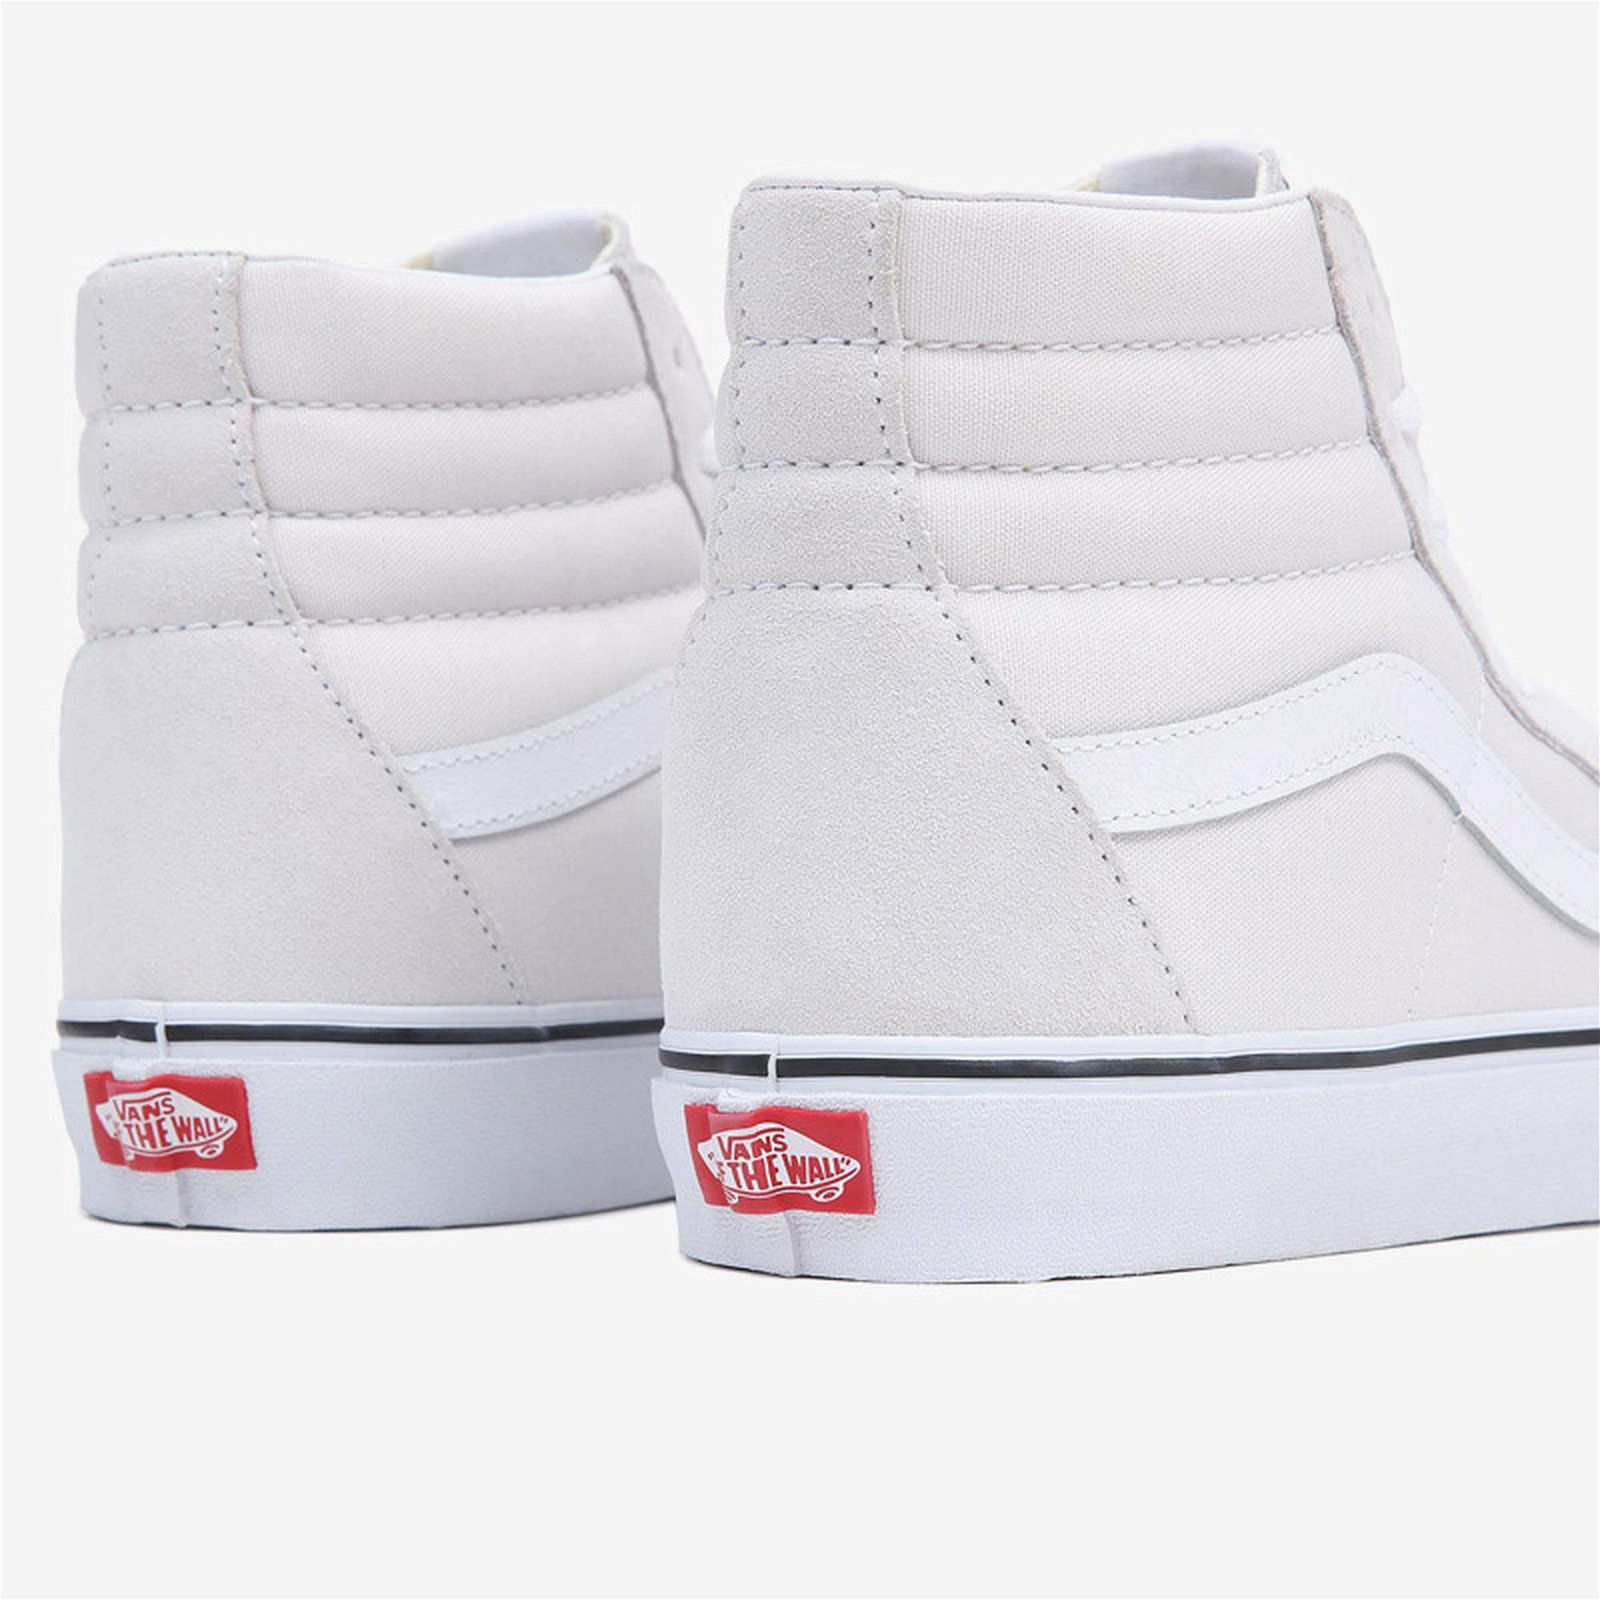 Vans Ua Sk8-Hi Kadın Beyaz Sneaker